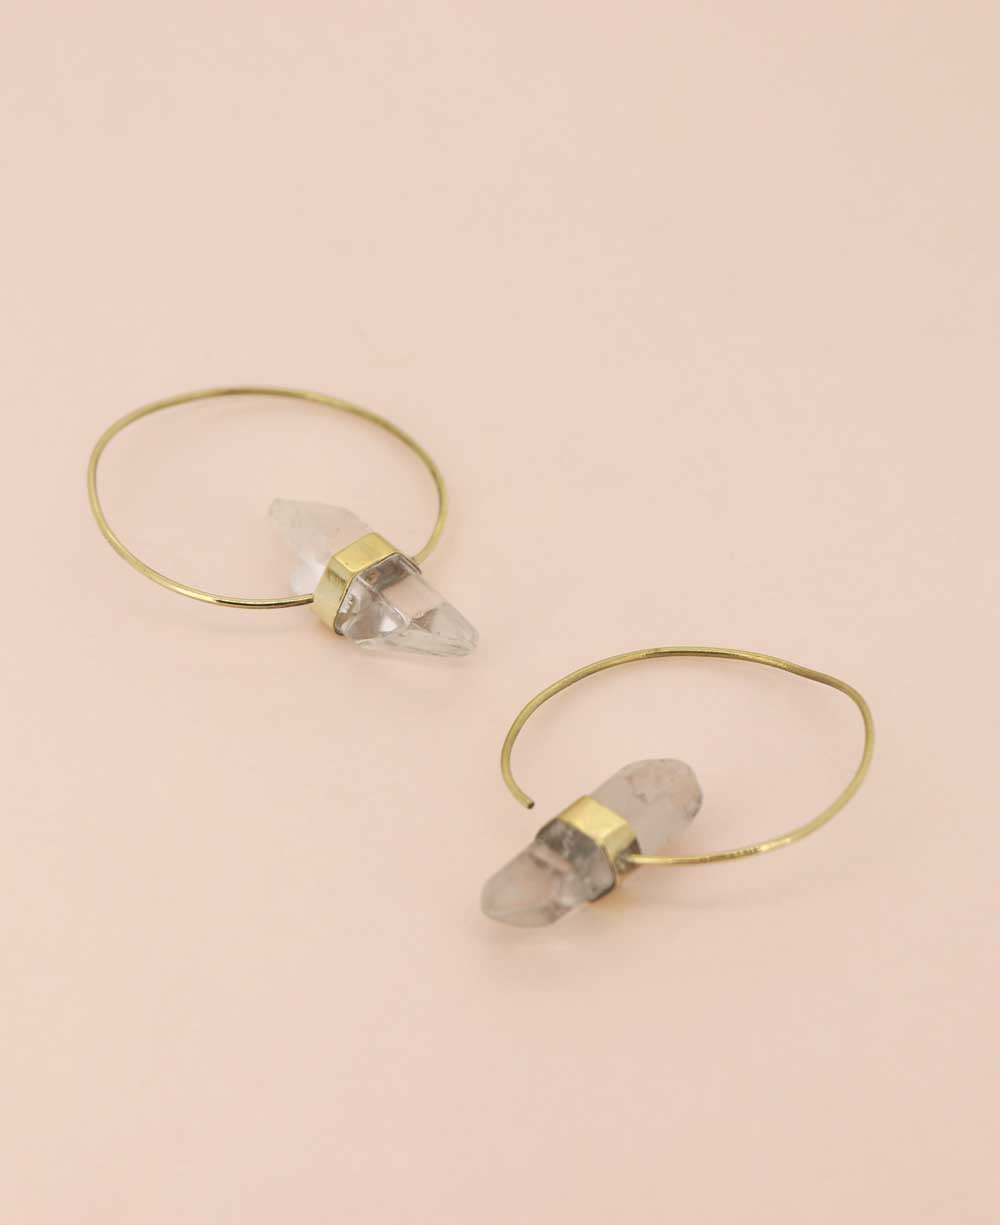 Quartz and brass threader earrings